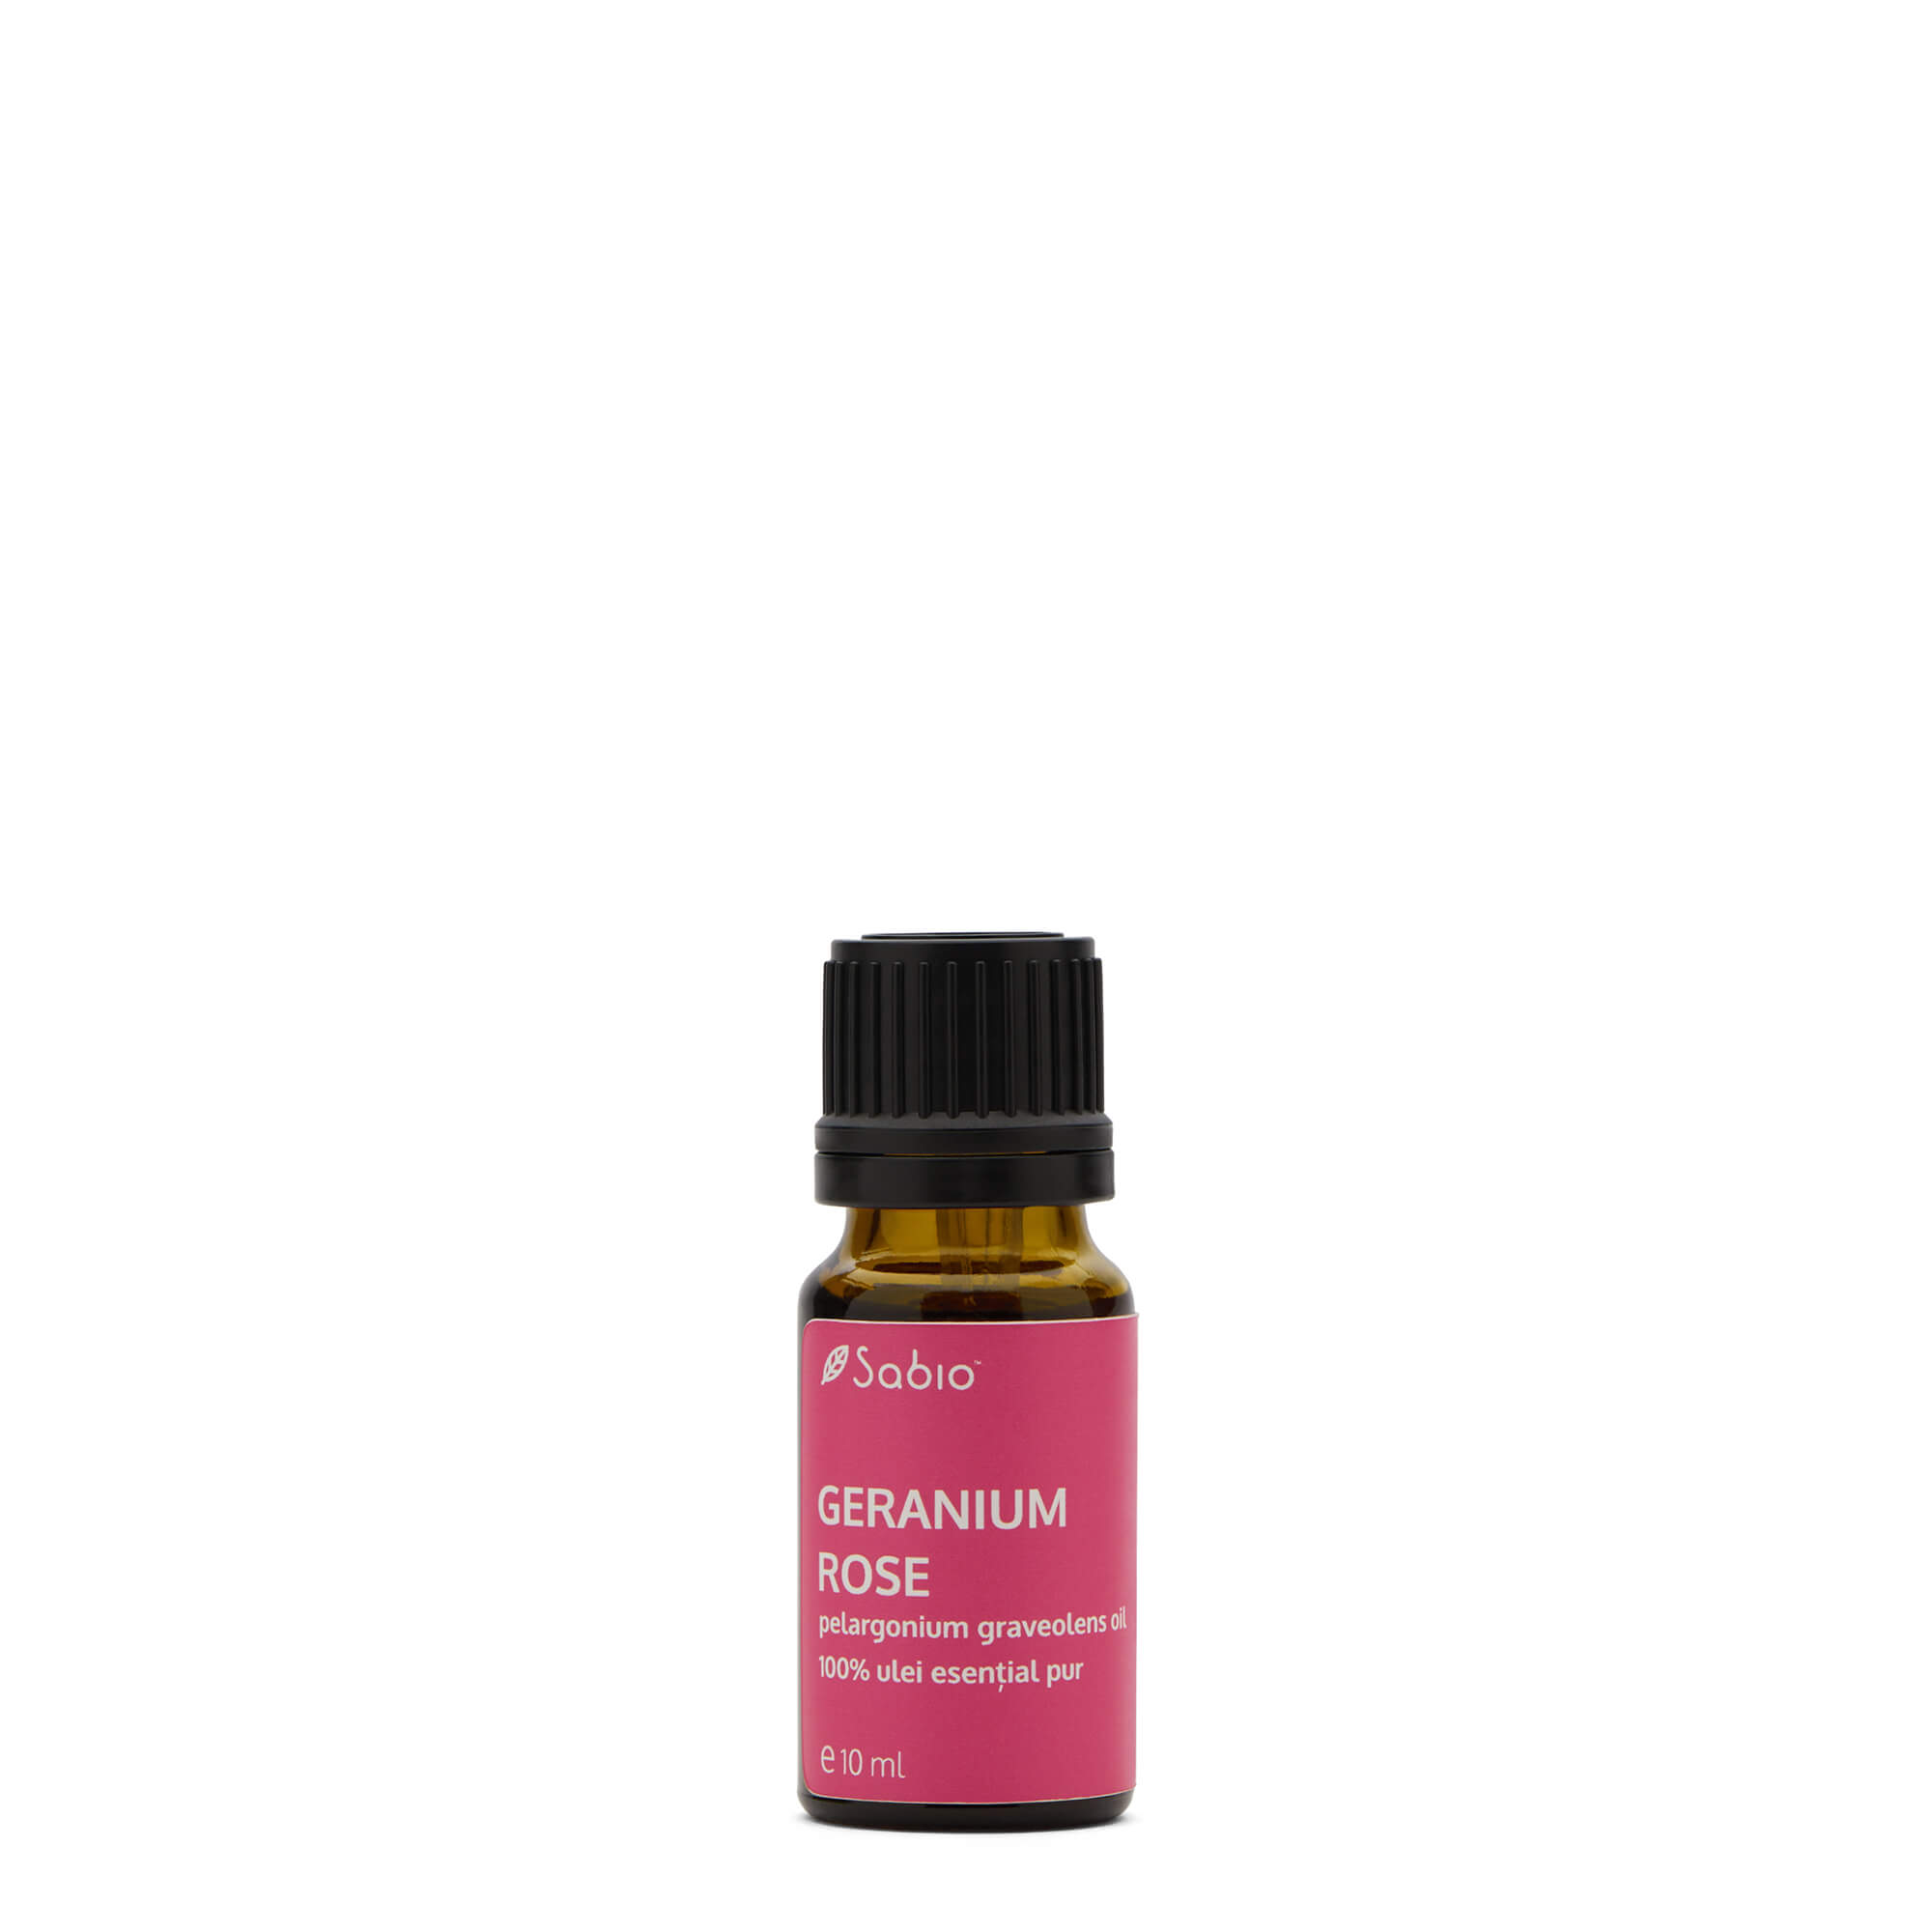 Geranium Rose essential oil